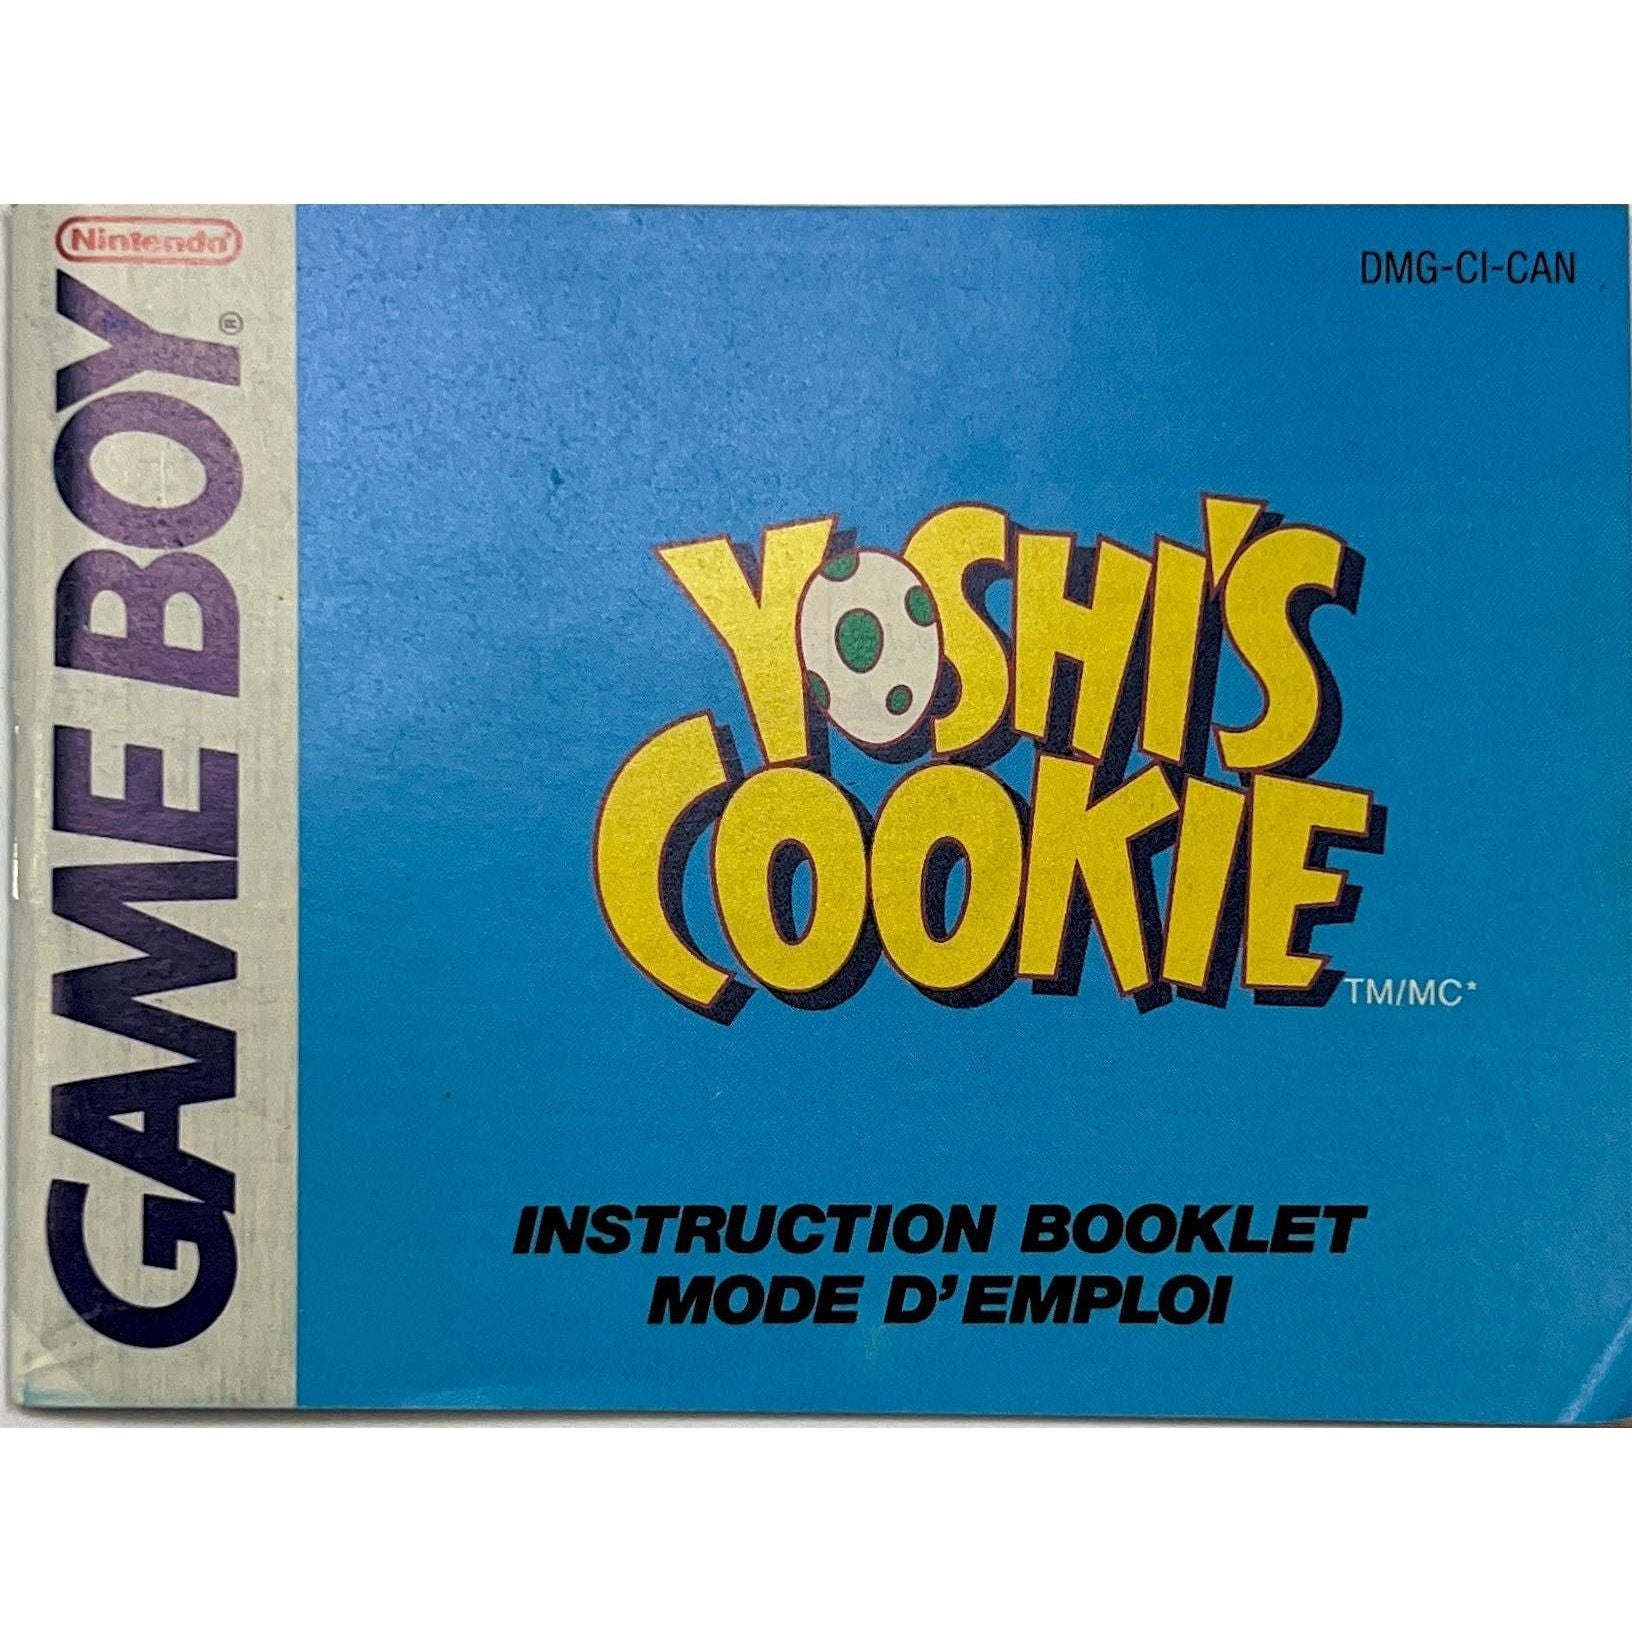 GB - Yoshi Cookie (Manual)